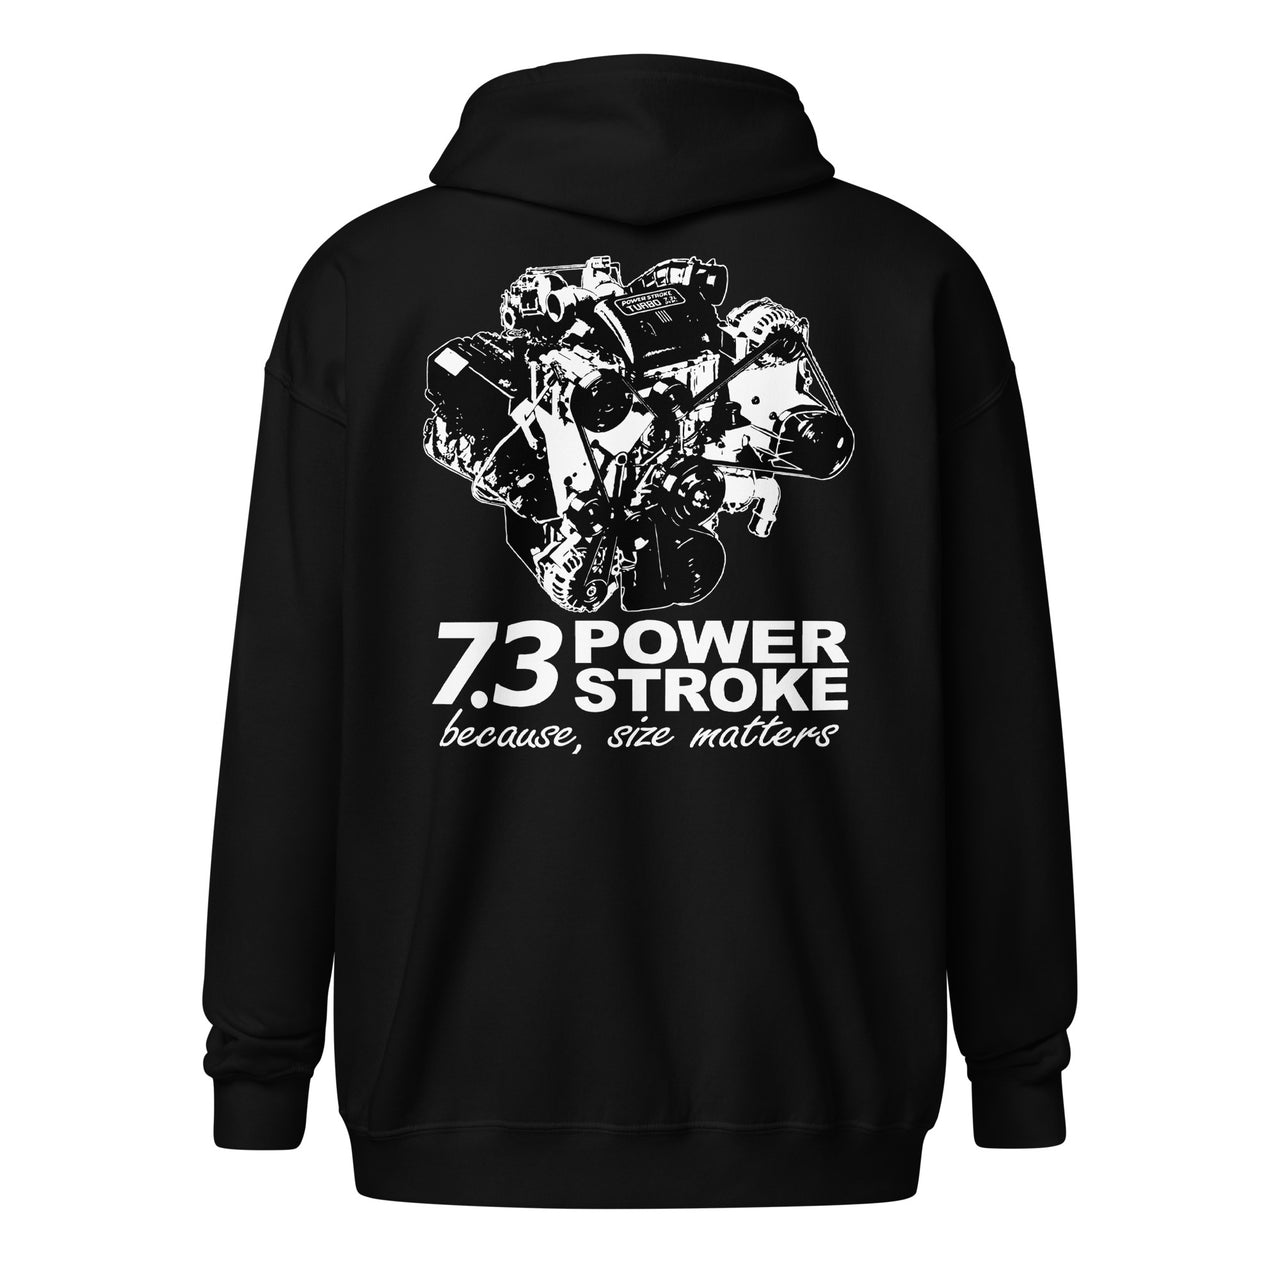 7.3 Power Stroke Size Matters Zip-Up Hoodie Sweatshirt